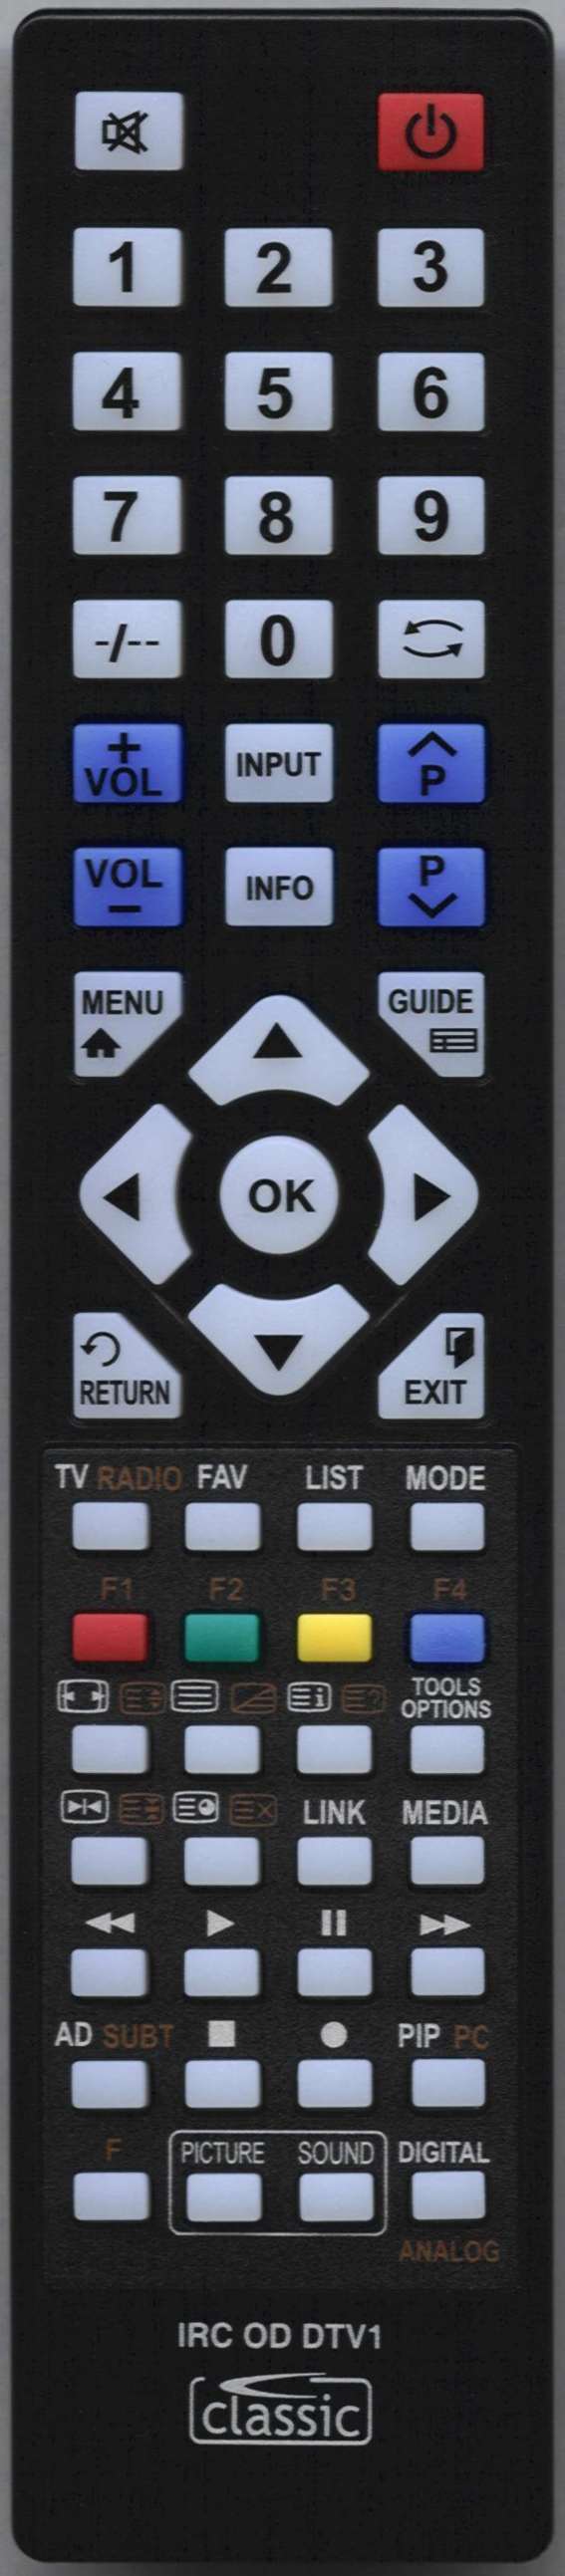 ORION C 1500 Remote Control